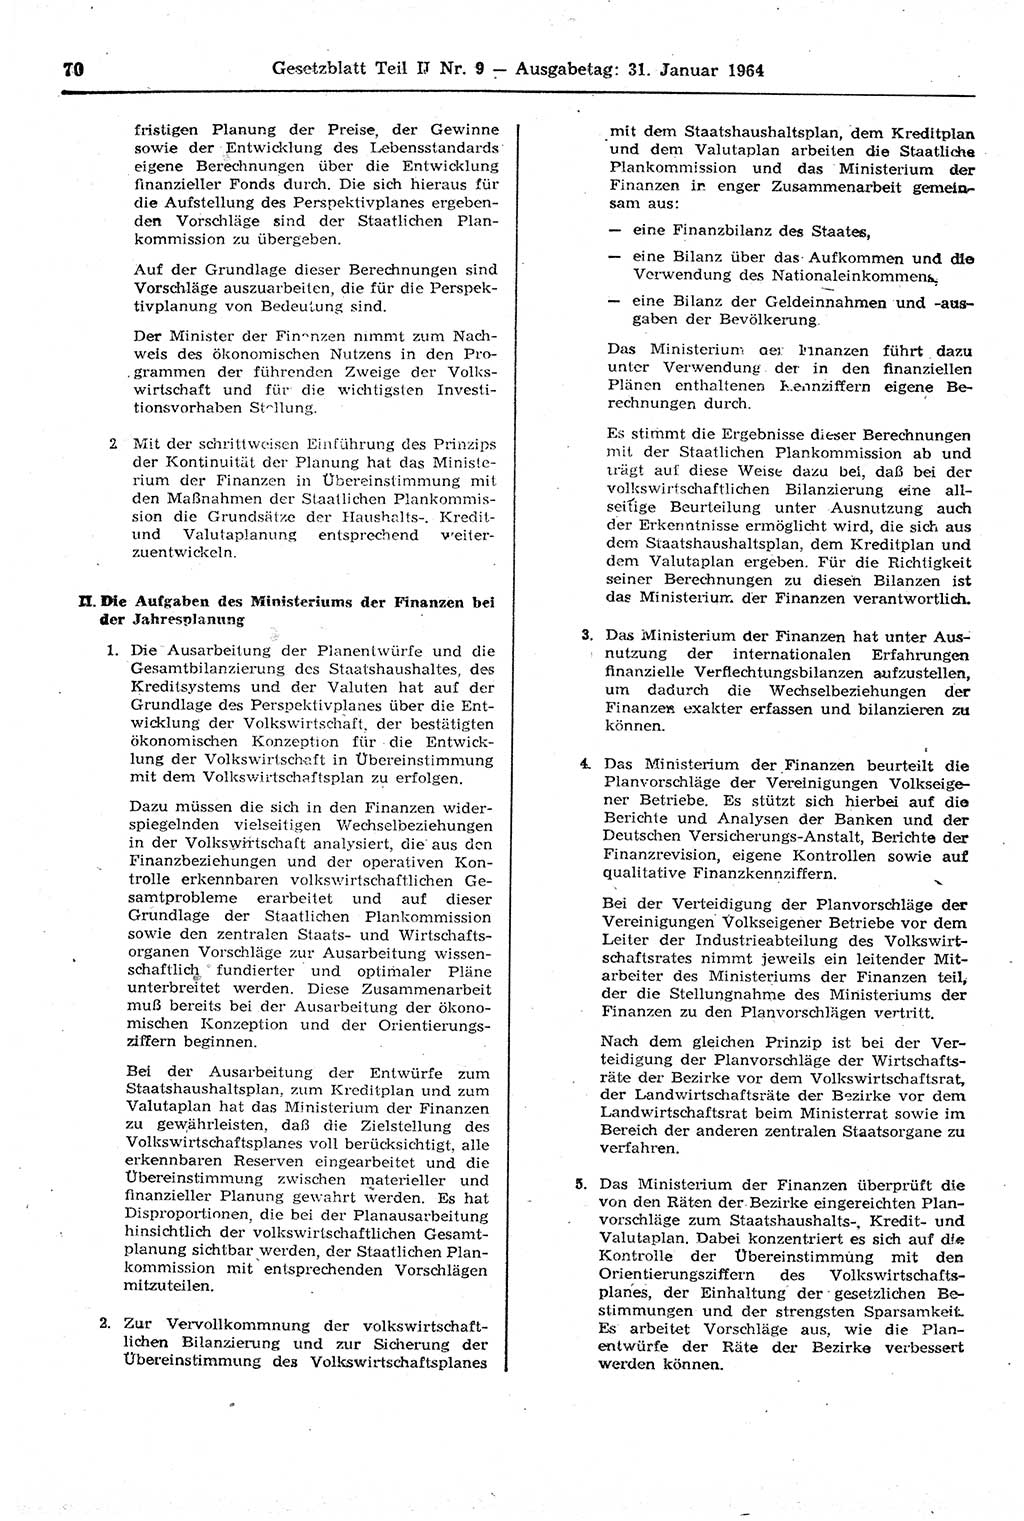 Gesetzblatt (GBl.) der Deutschen Demokratischen Republik (DDR) Teil ⅠⅠ 1964, Seite 70 (GBl. DDR ⅠⅠ 1964, S. 70)